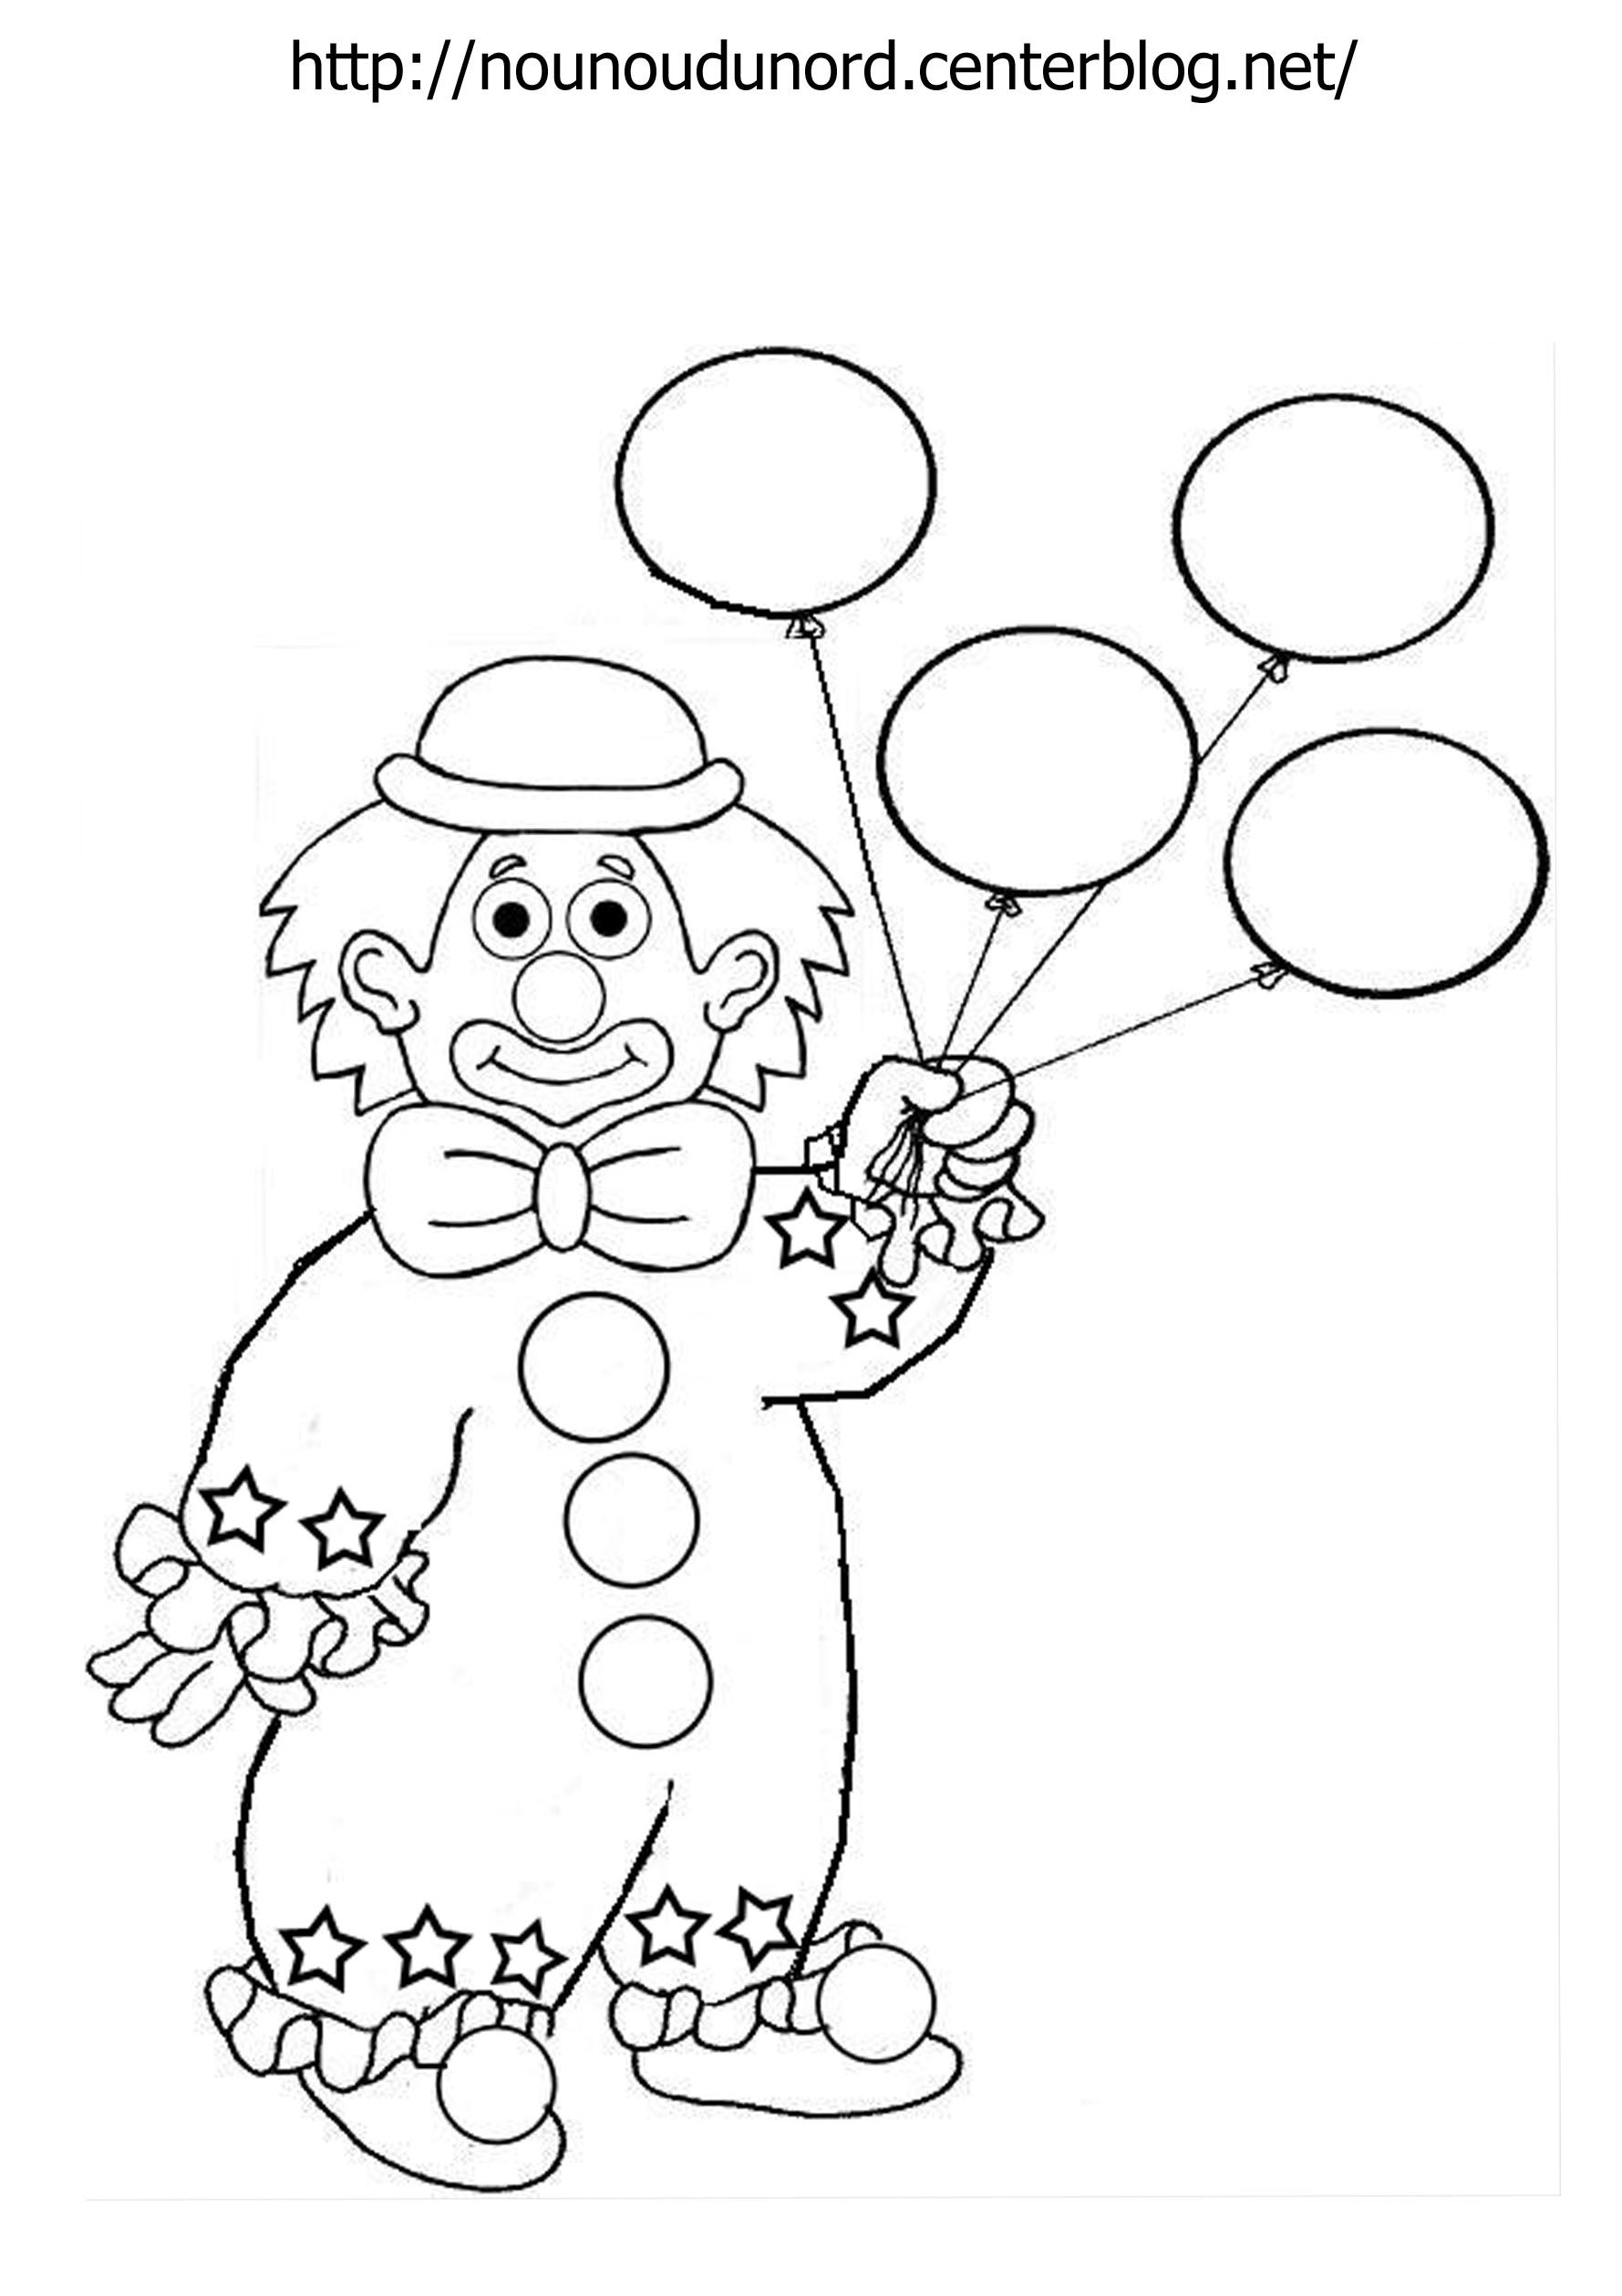 Раскраска клоун для детей 3 4 лет. Клоун раскраска. Клоун раскраска для детей. Клоун для раскрашивания детям. Клоун аппликация для детей раскраска.